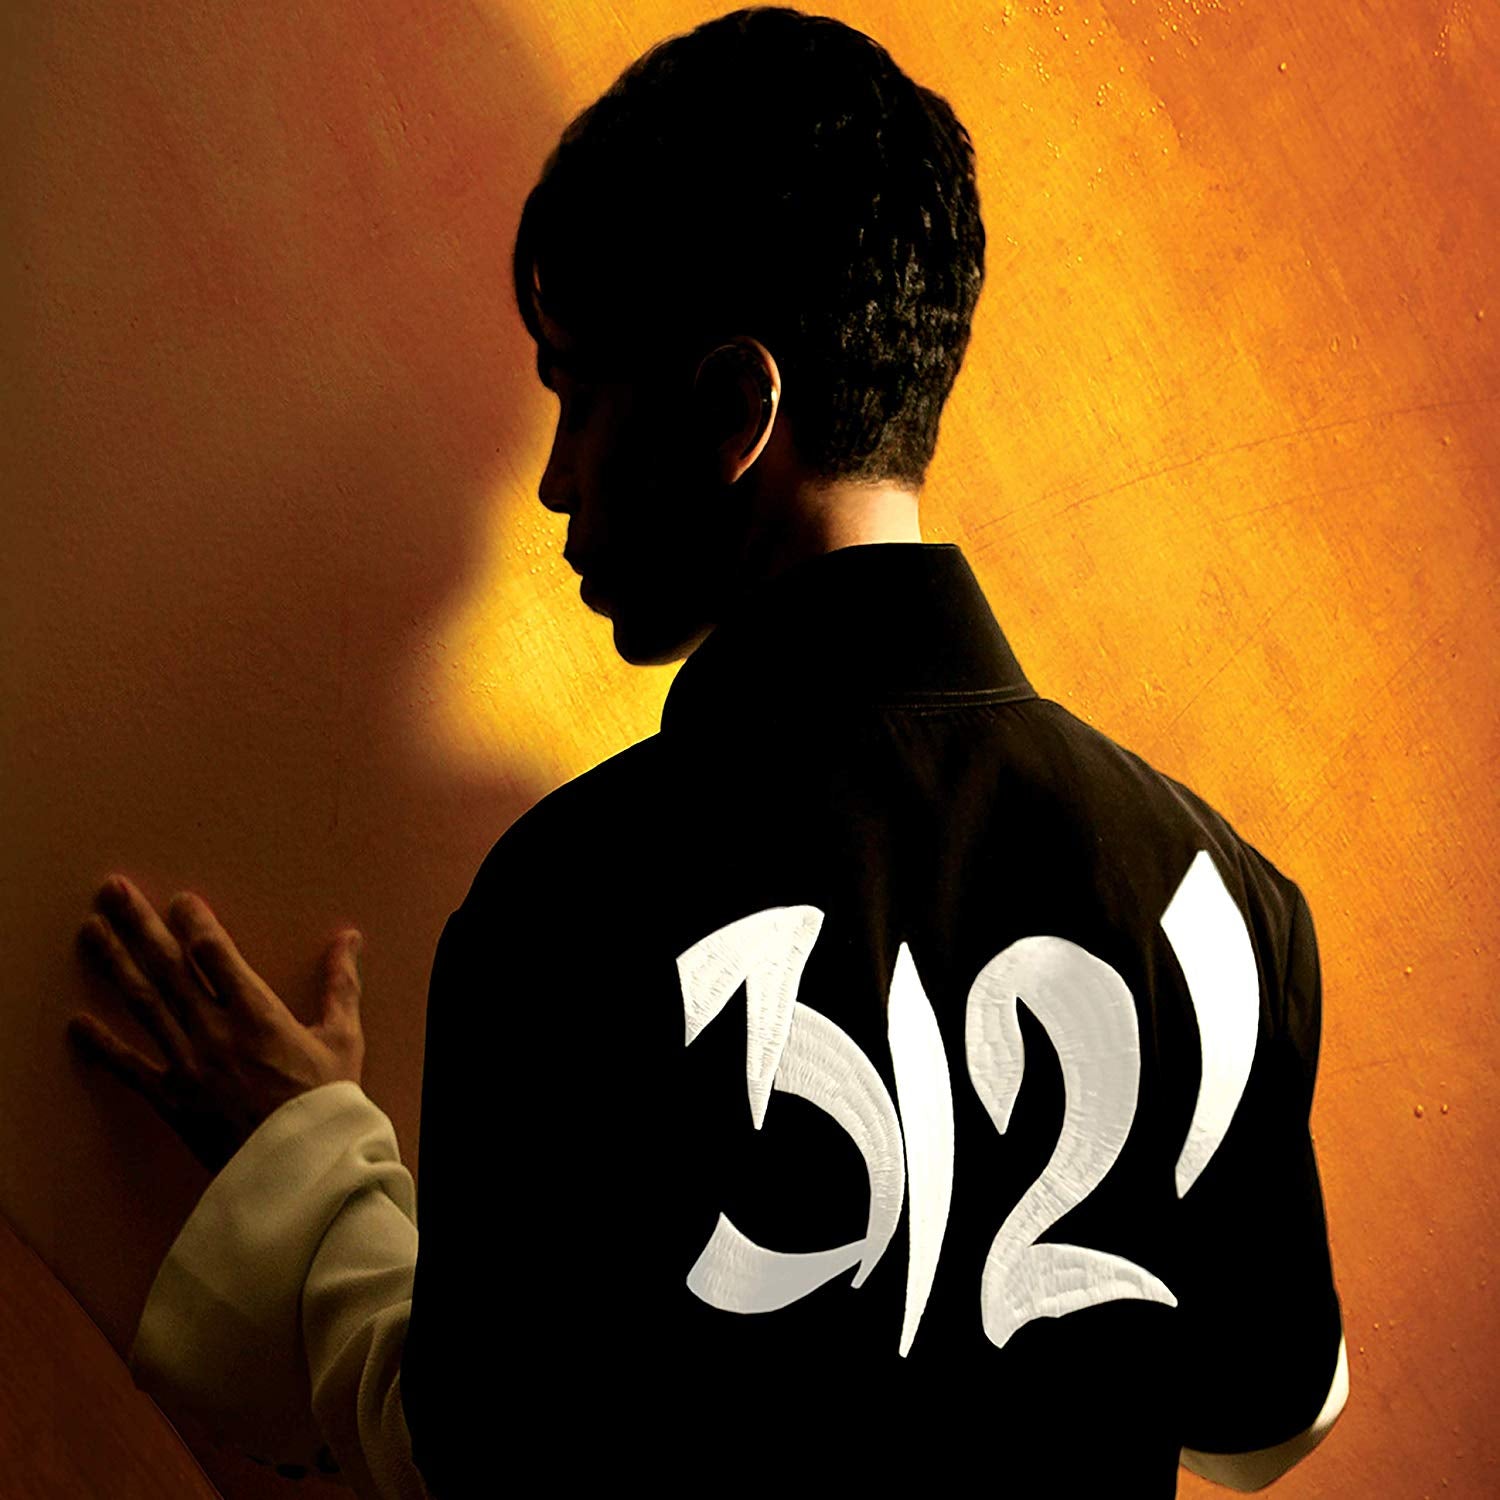 Prince | 3121 | CD